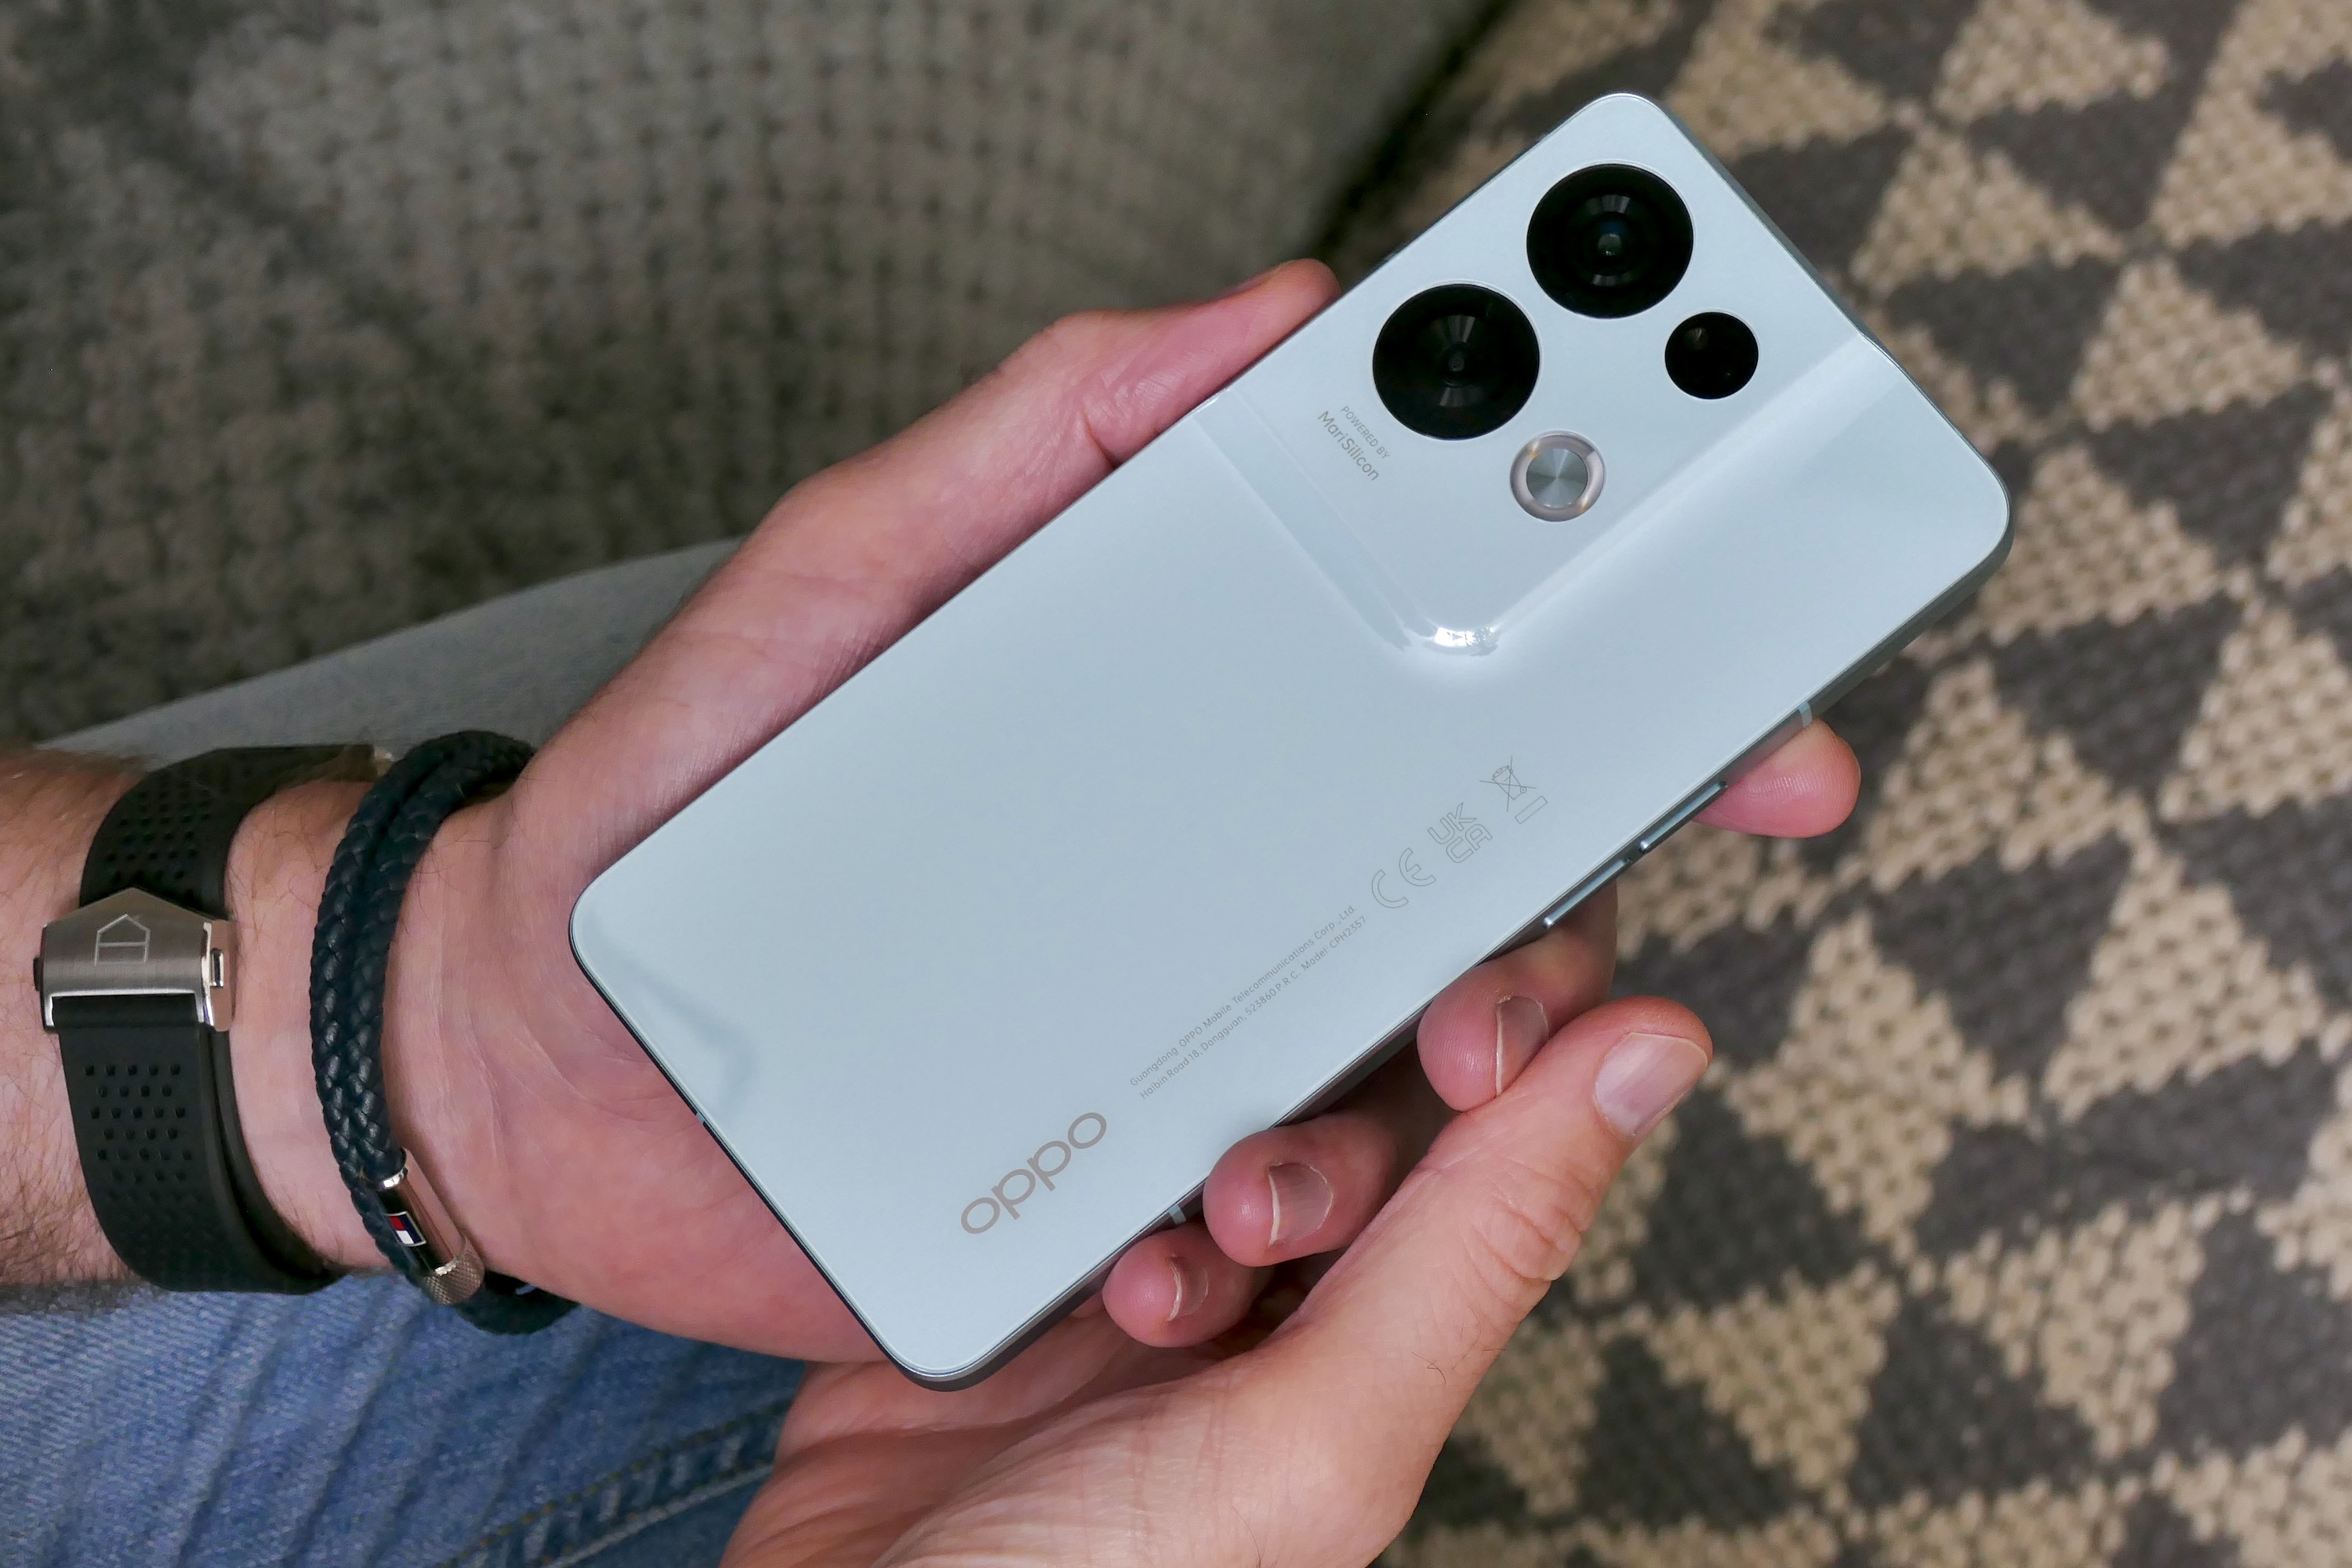 Bạn đang tìm kiếm một chiếc điện thoại mới đầy đủ tính năng và có thiết kế đẹp mắt? Hãy xem hình ảnh liên quan đến đánh giá của Oppo Reno 8 Pro để biết thêm chi tiết về sản phẩm này và đưa ra quyết định sáng suốt nhất cho mình.